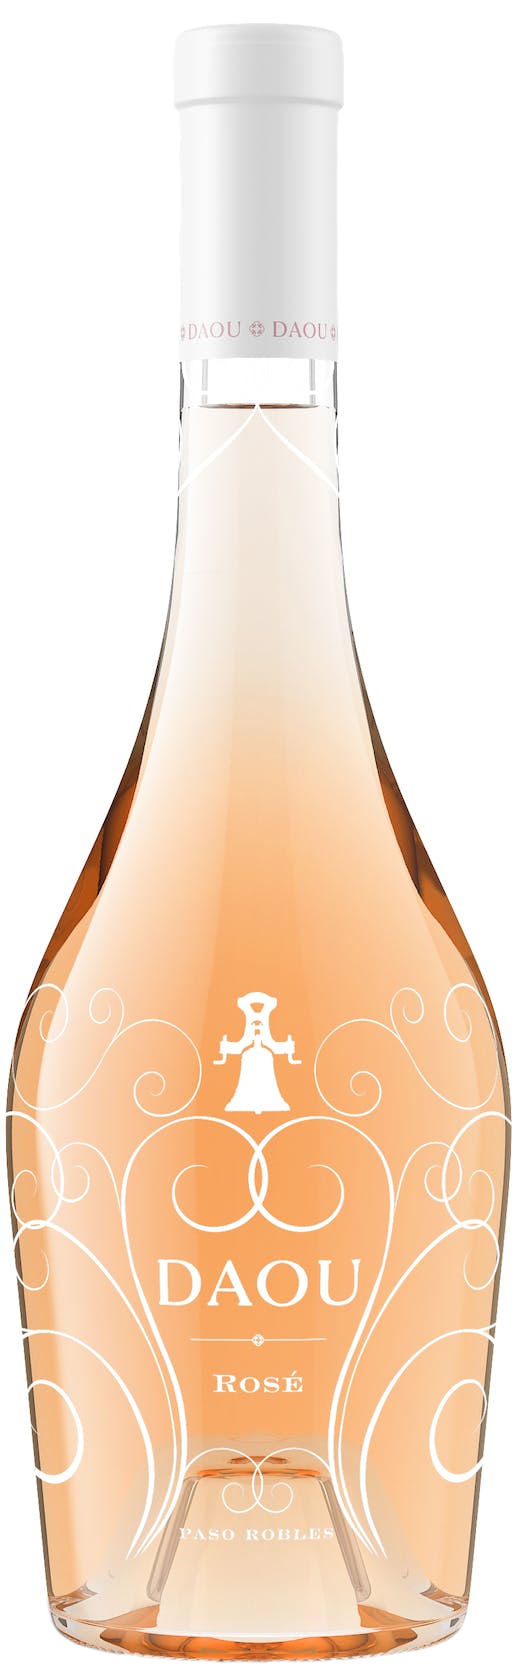 Daou Rosé 2021 750 ml bottle VINTAGES